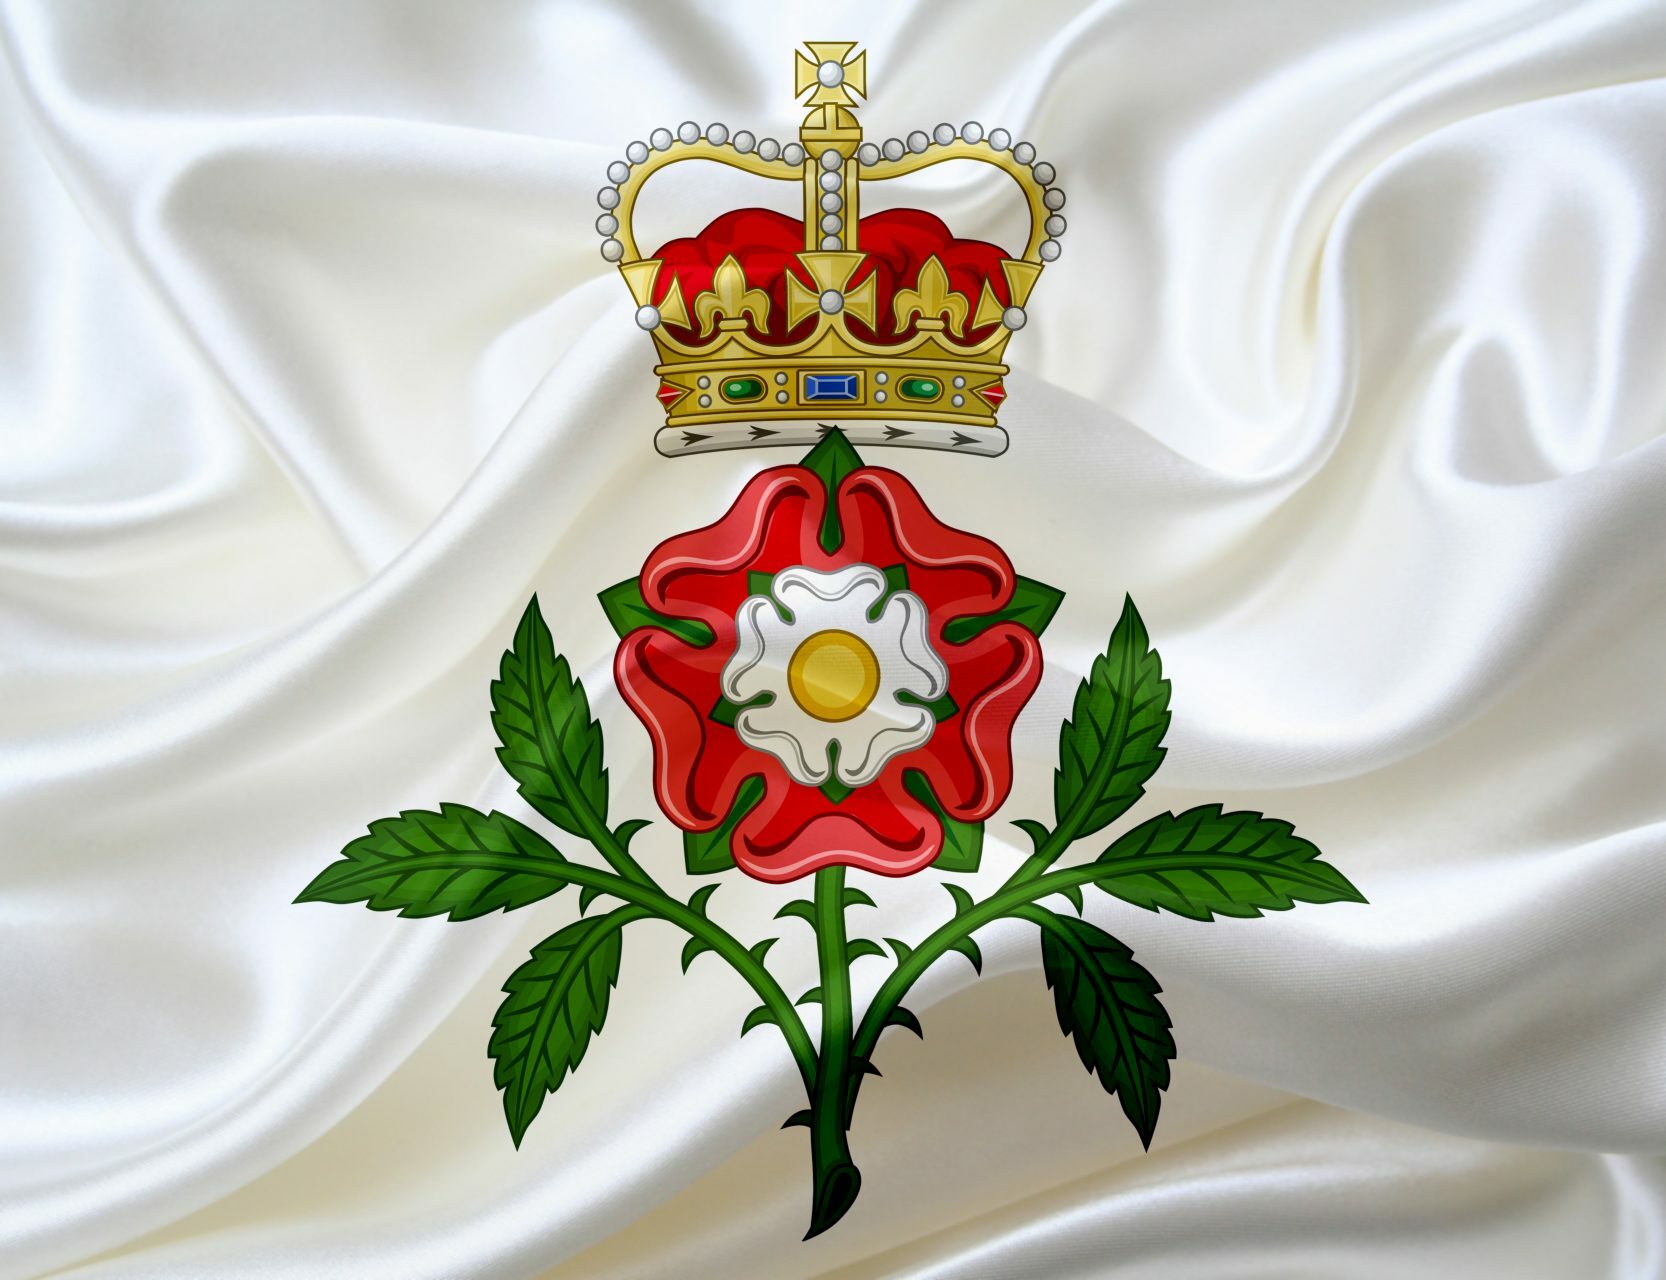 символ Англии - белая роза, окаймленная красными лепестками.